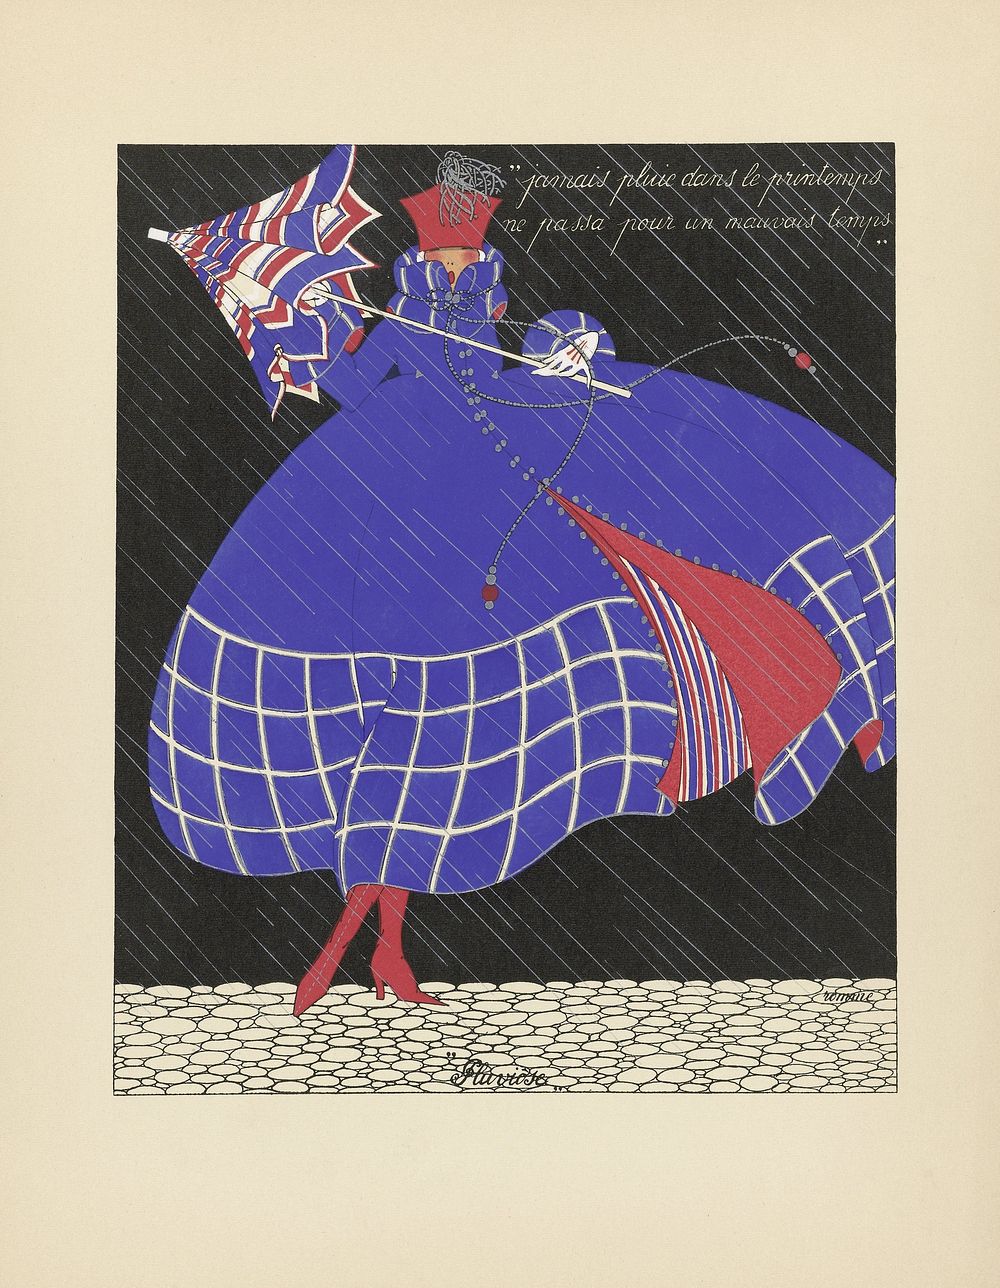 Les Douze Mois de l'Année: Pluviose (1919) by Marthe Romme and Sauvage uitgever